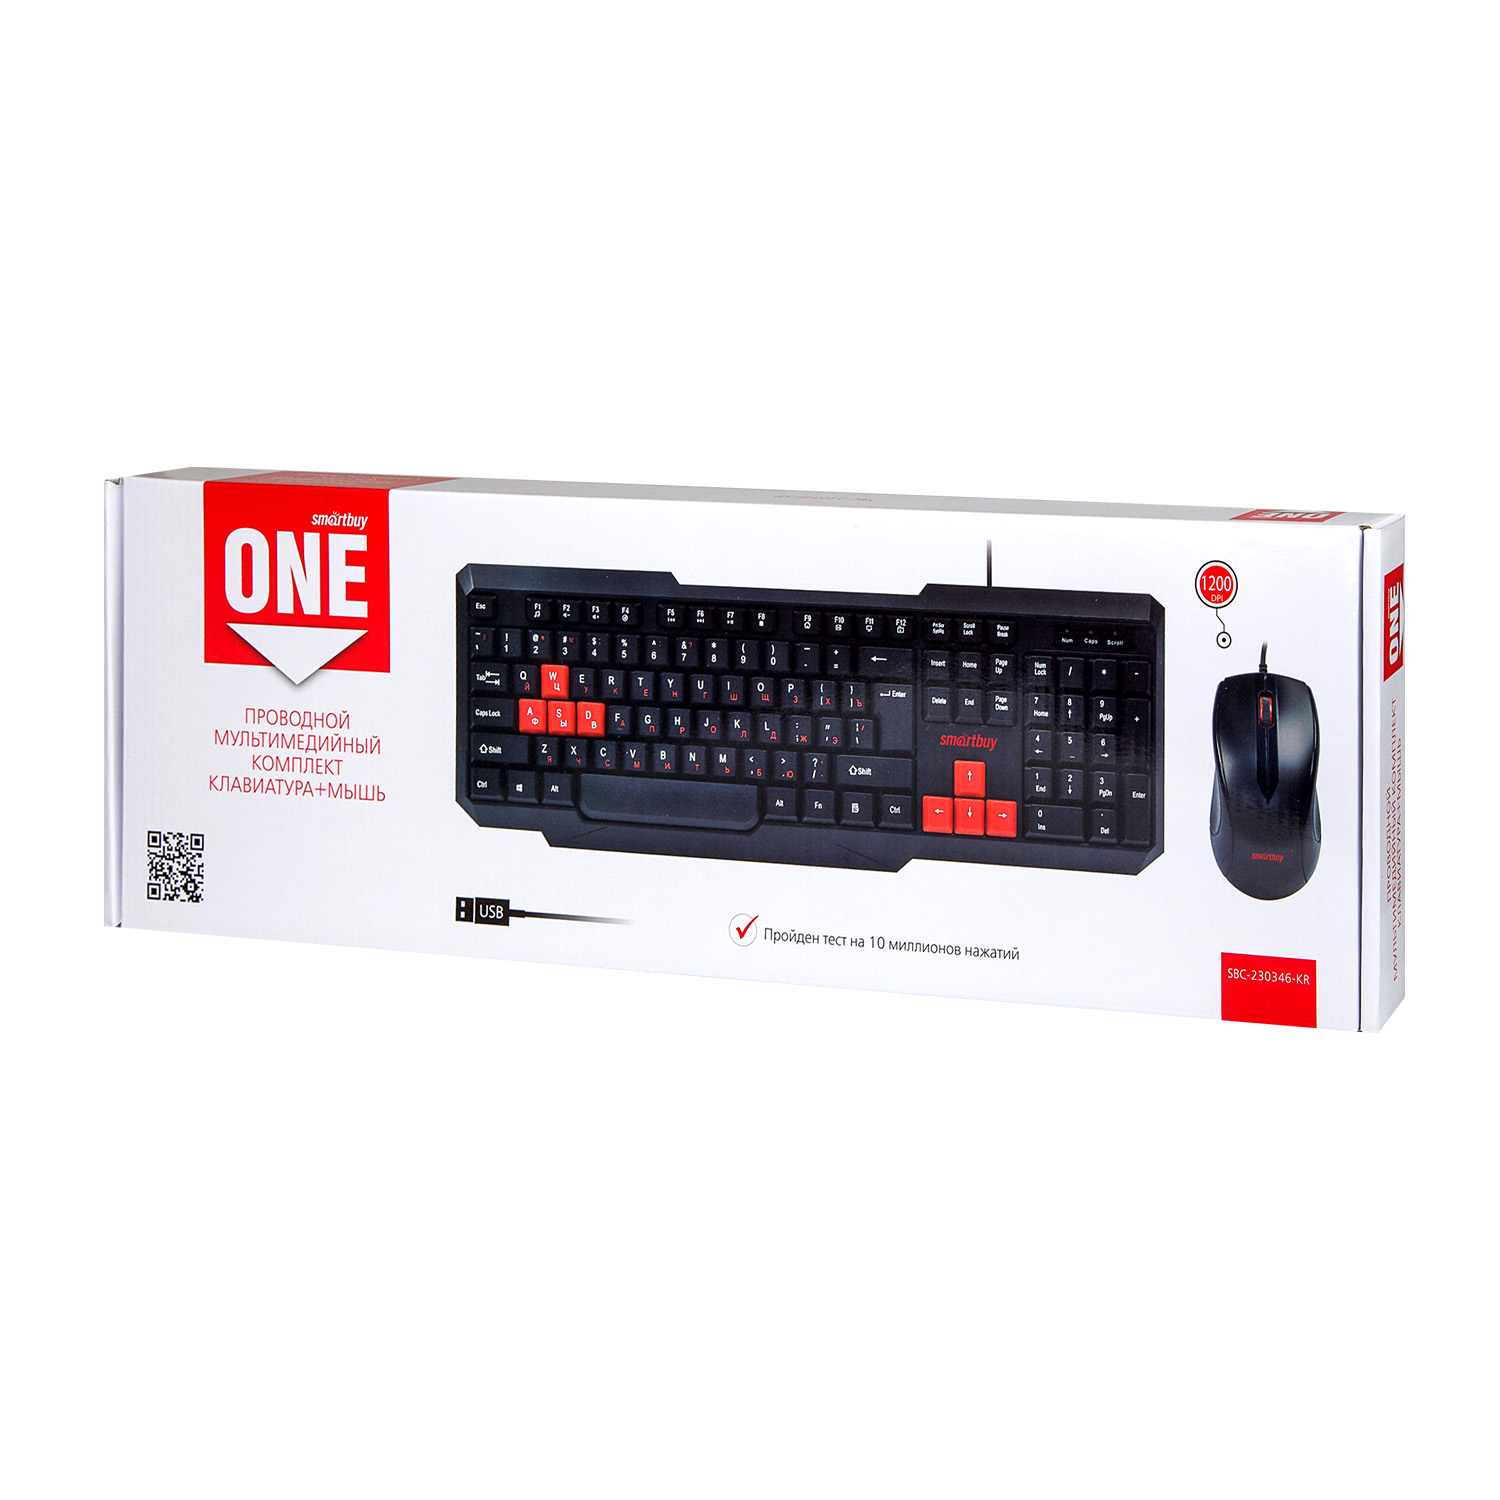 Мультимедийный комплект клавиатура+мышь Smartbuy ONE черно-красный (SBC-230346-KR) /20